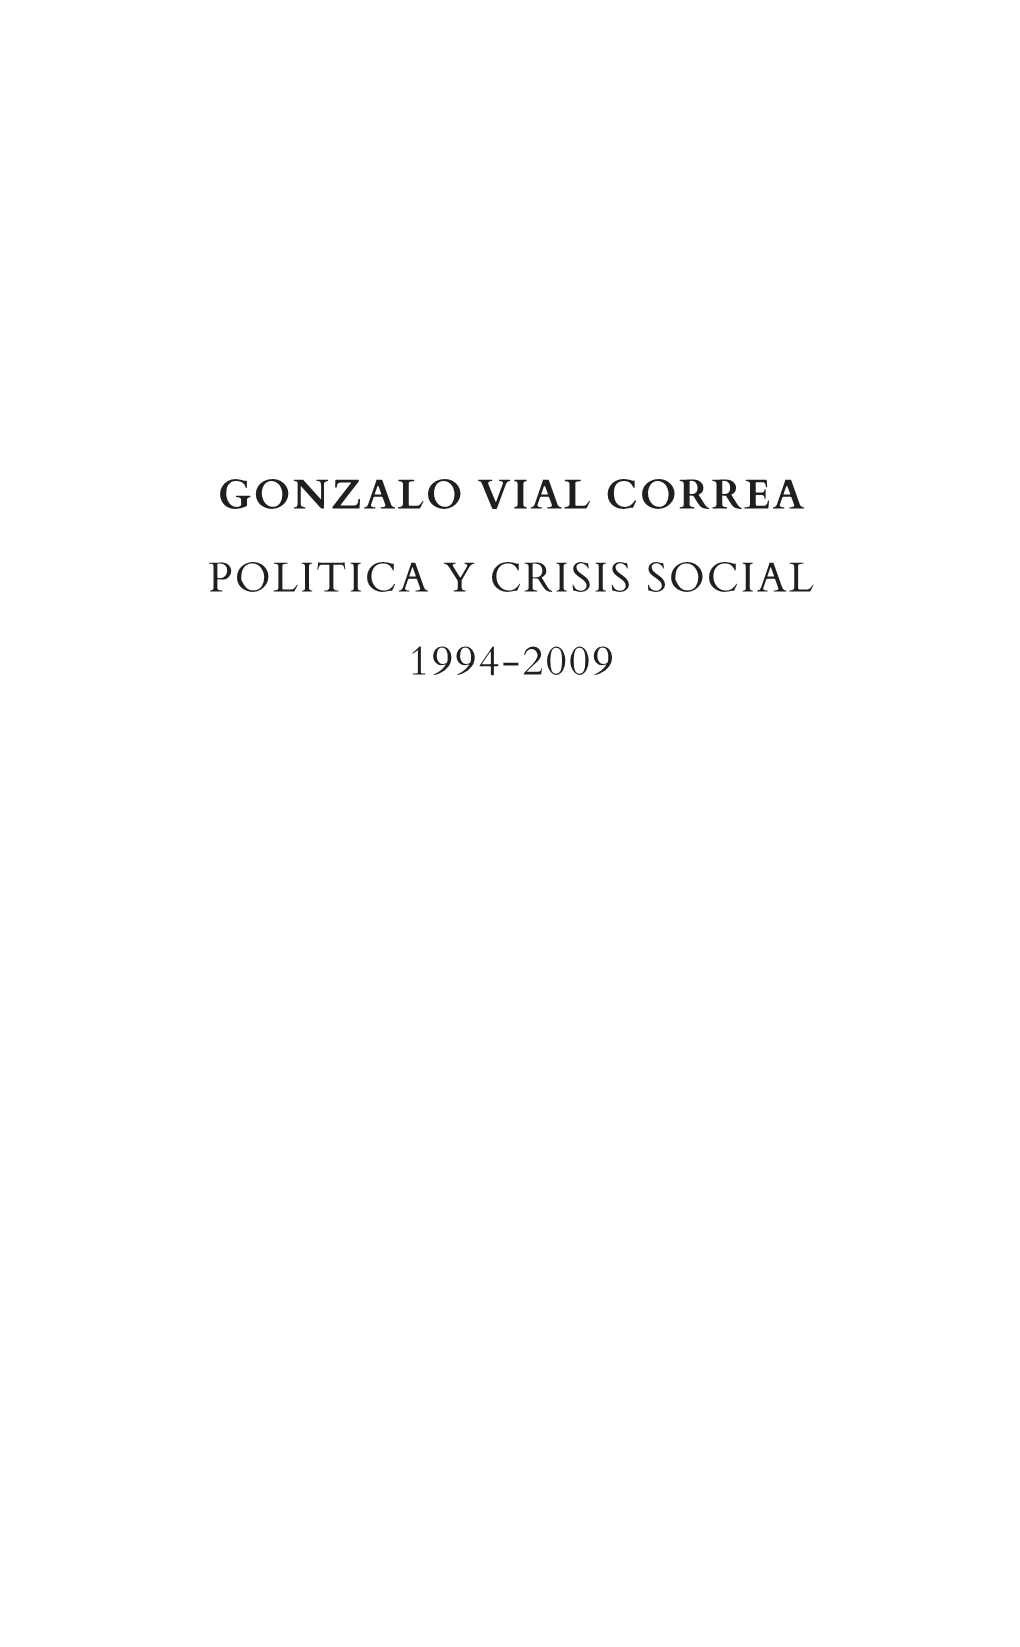 Gonzalo Vial Correa